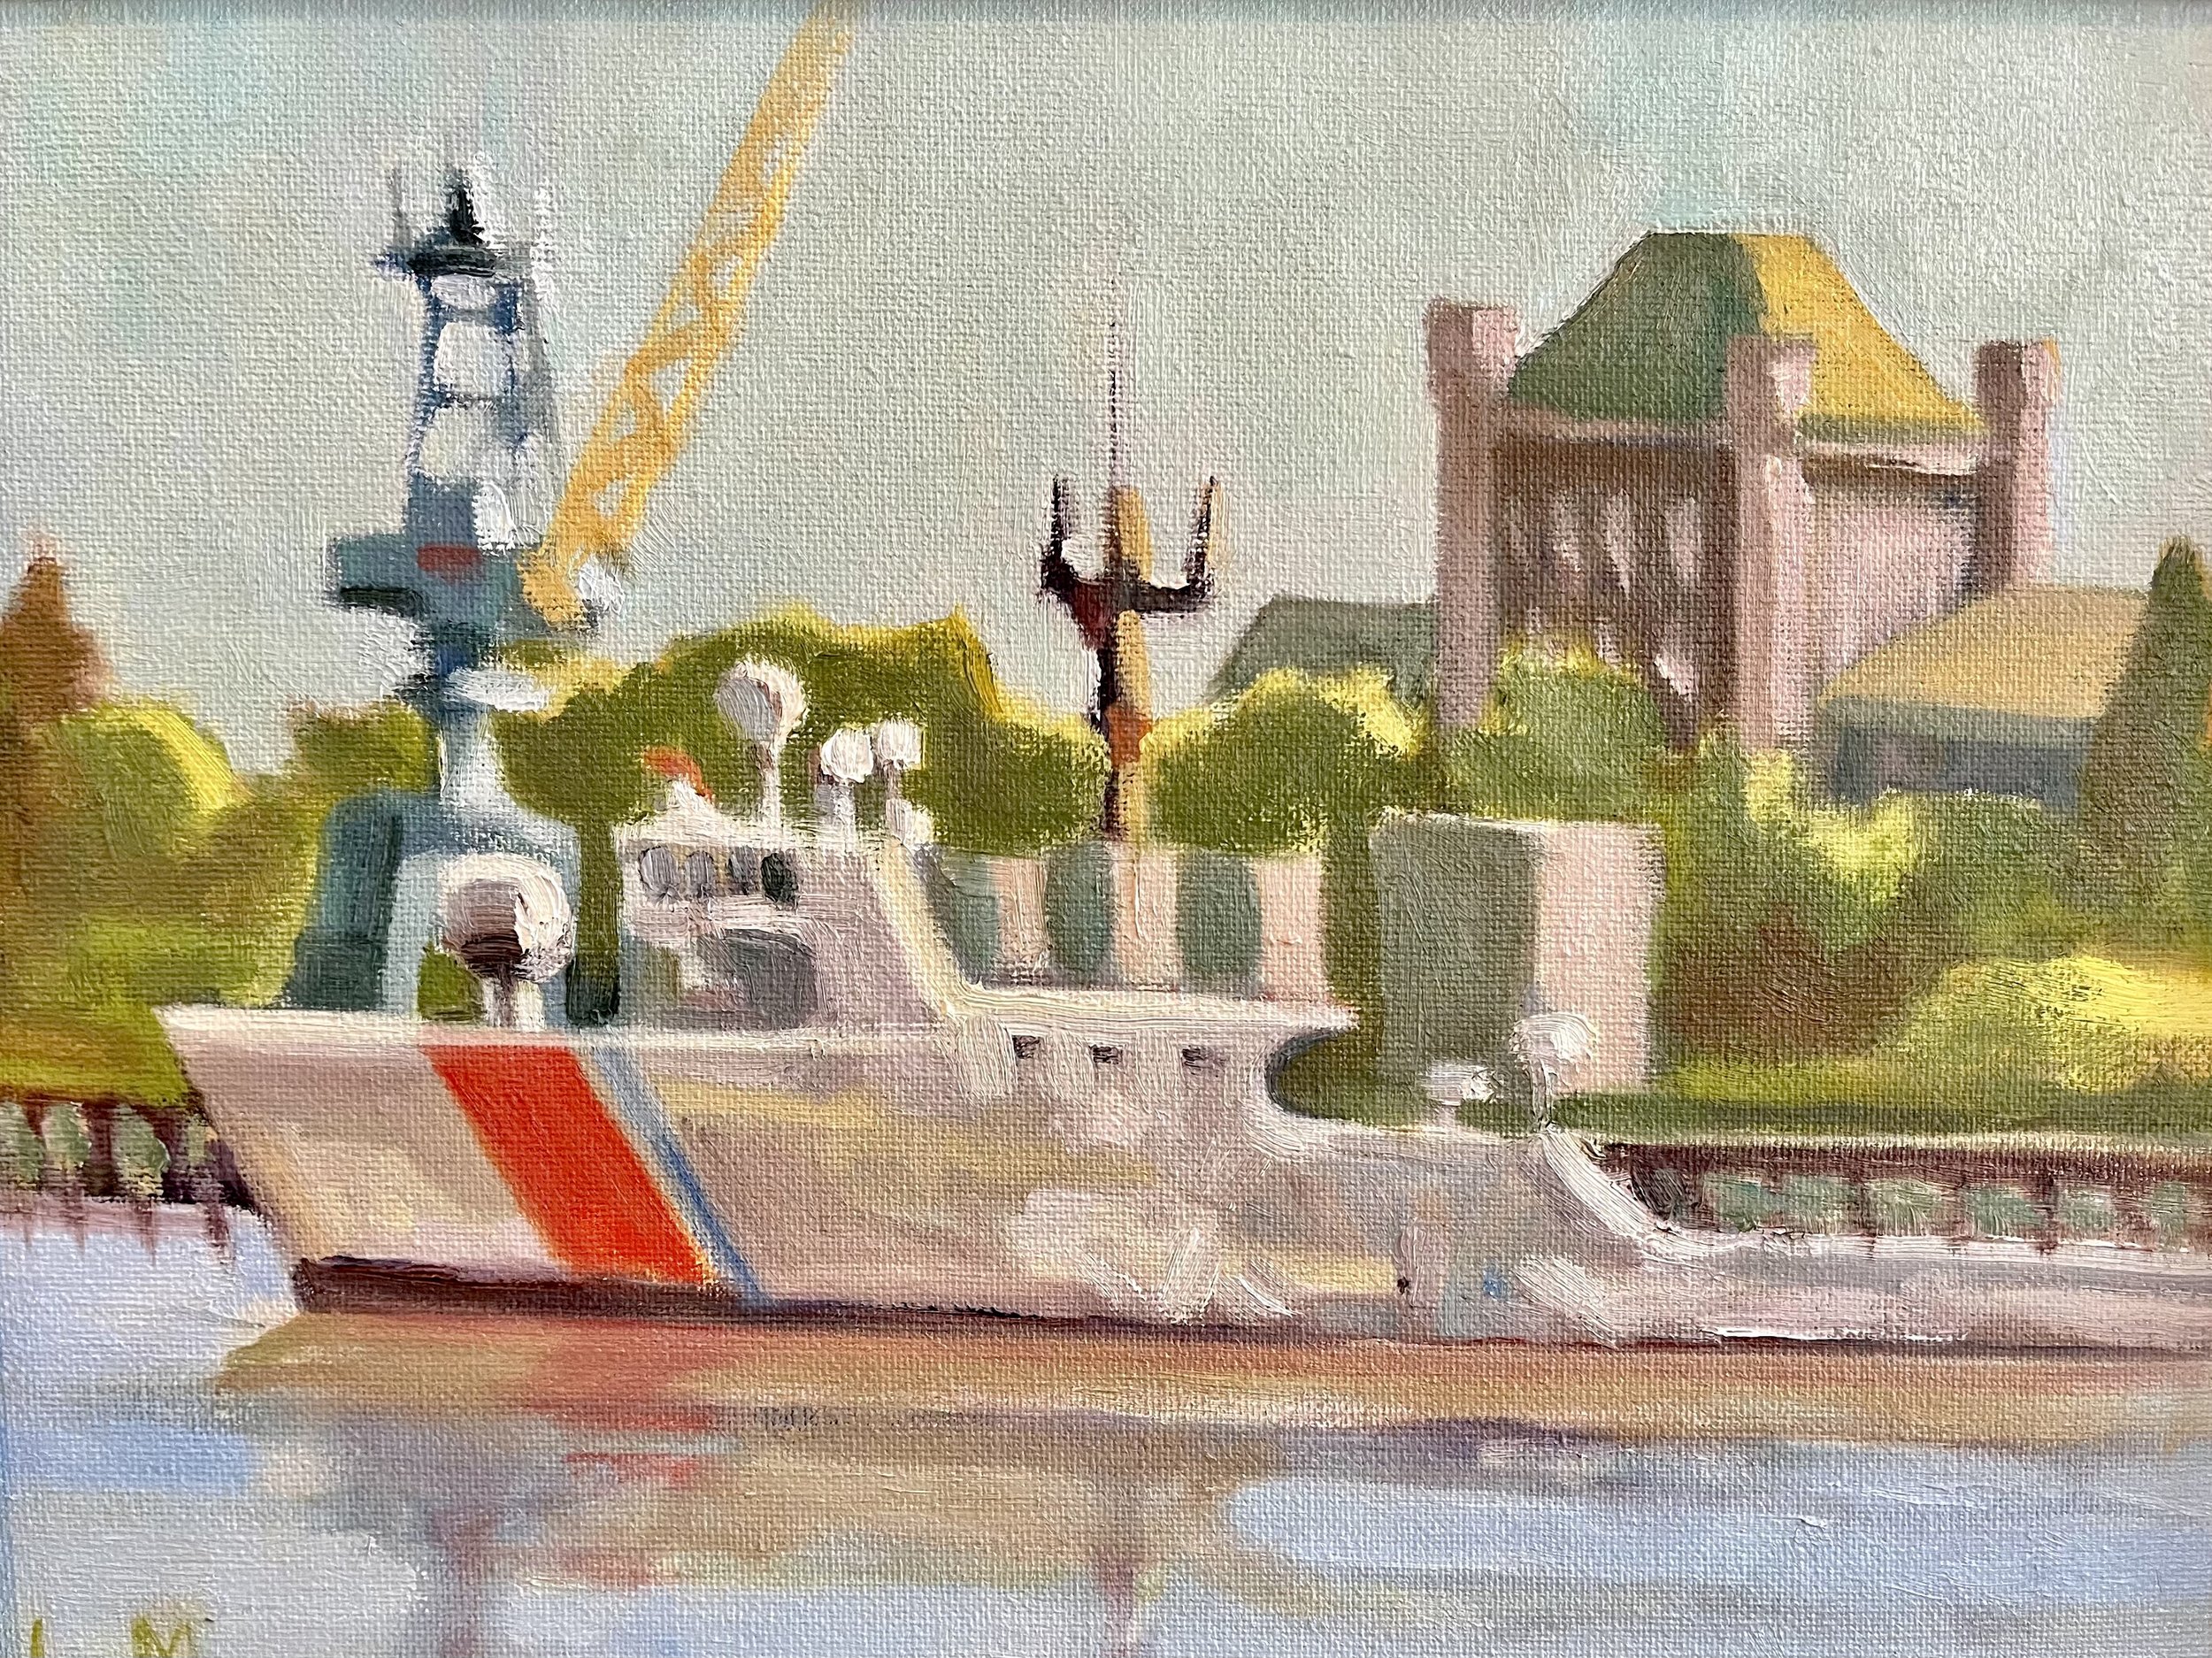 Coast Guard, oil, 9x12